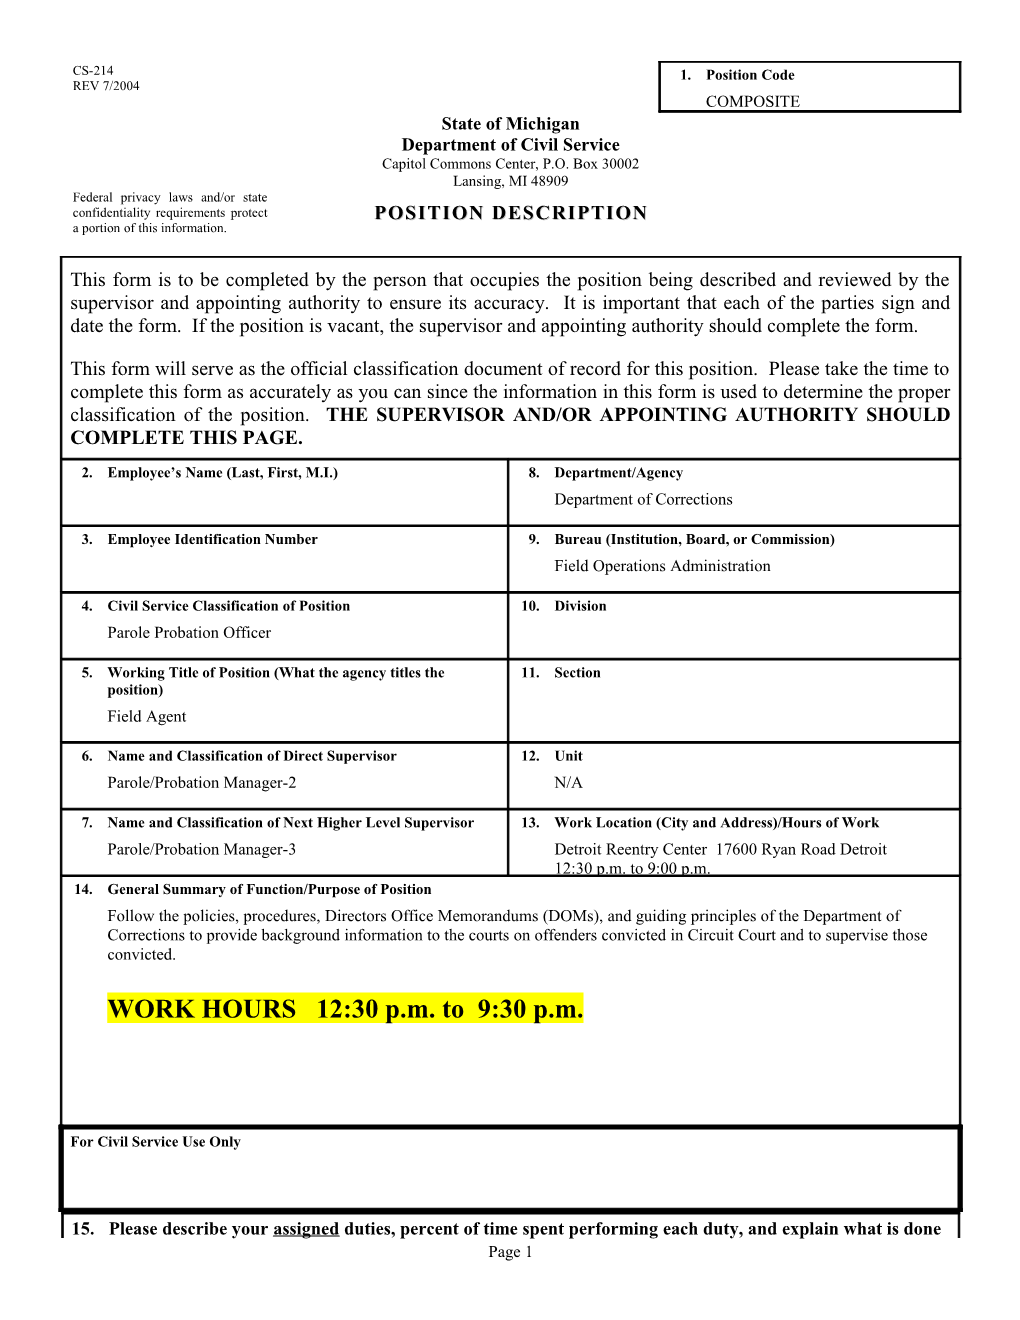 CS-214 Position Description Form s24